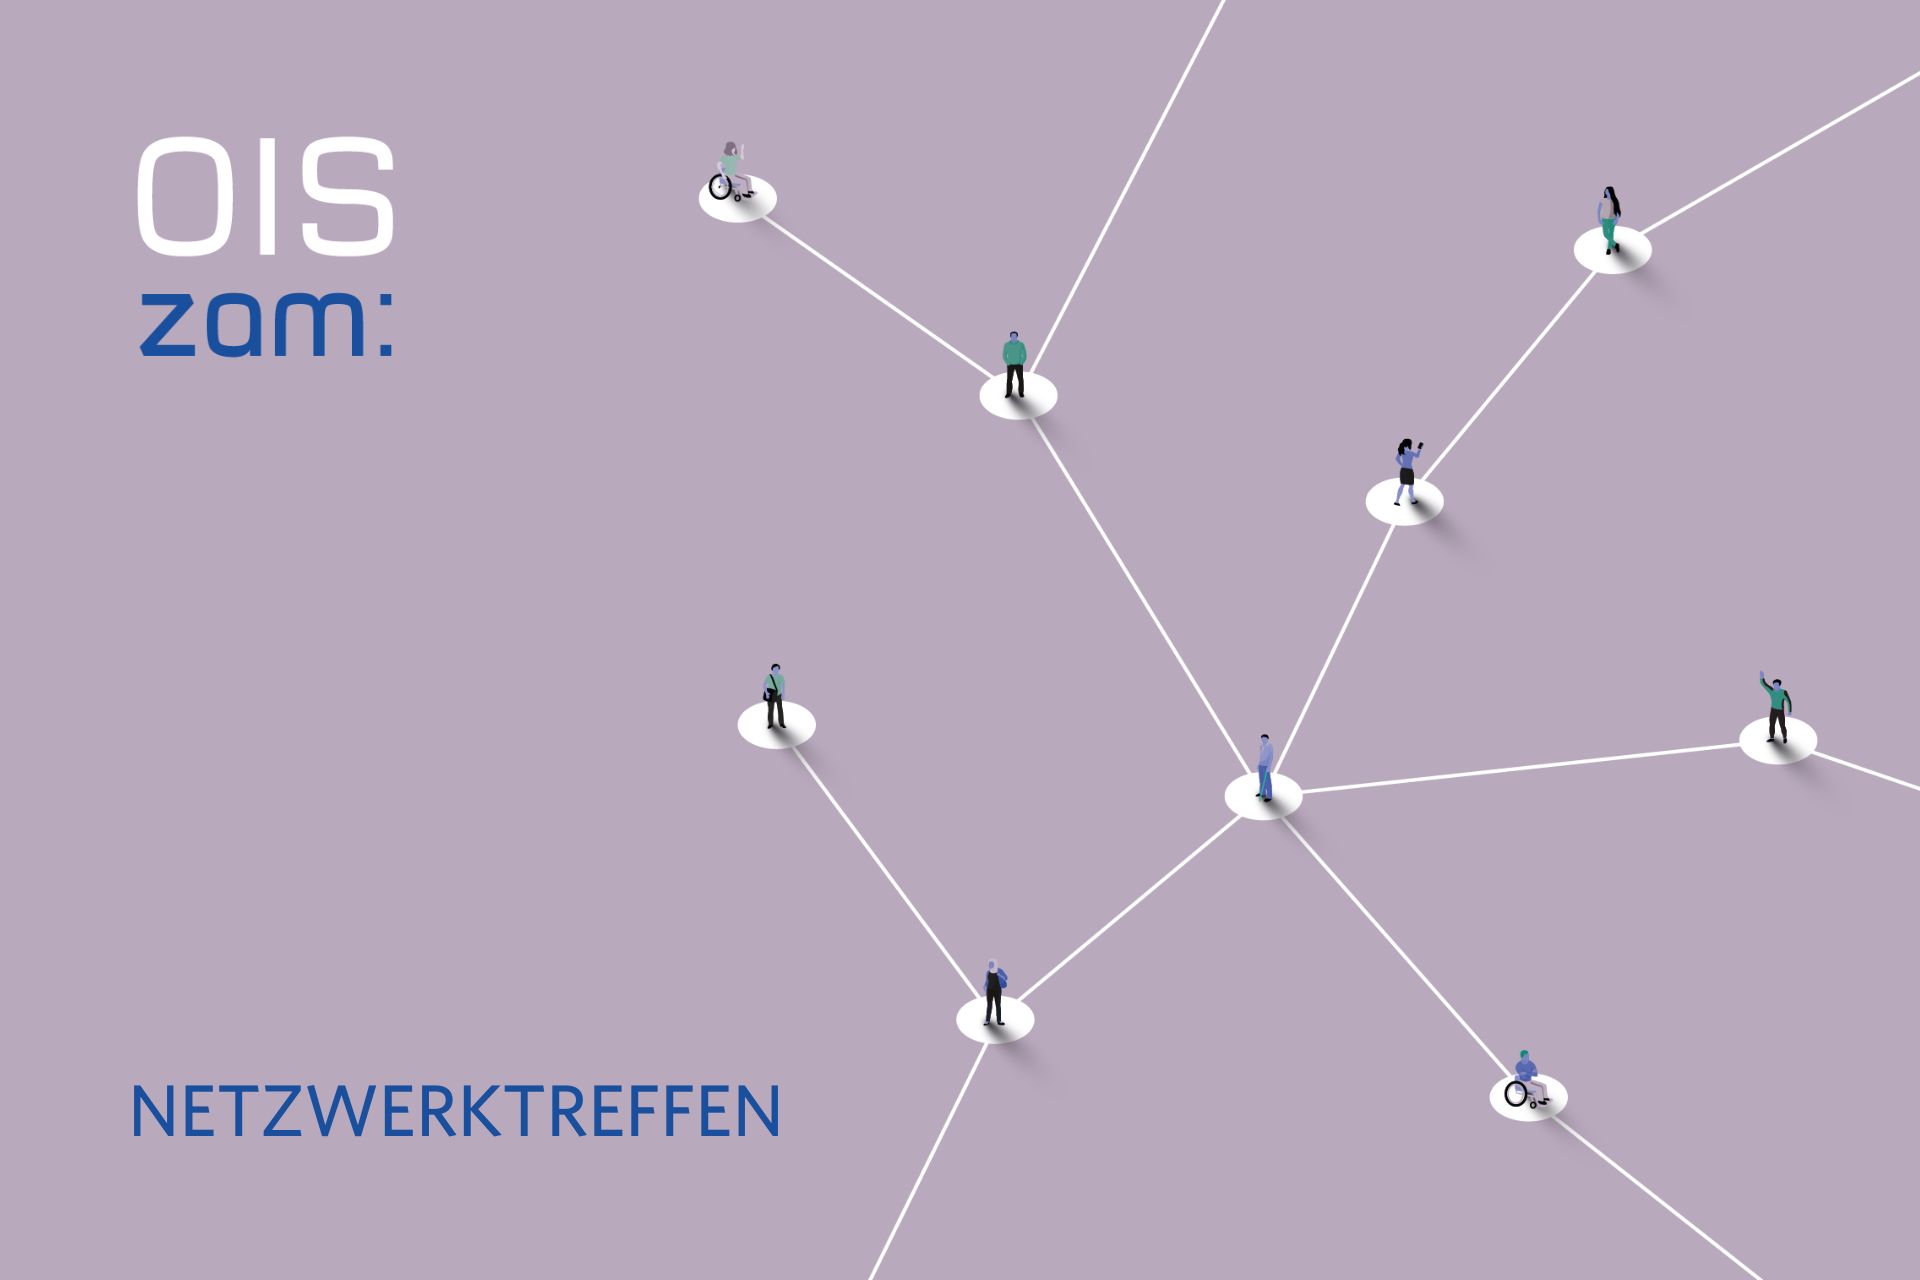 Sujetbild OIS zam: Netzwerktreffen mit Menschen, die durch weiße Linien miteinander verbunden sind